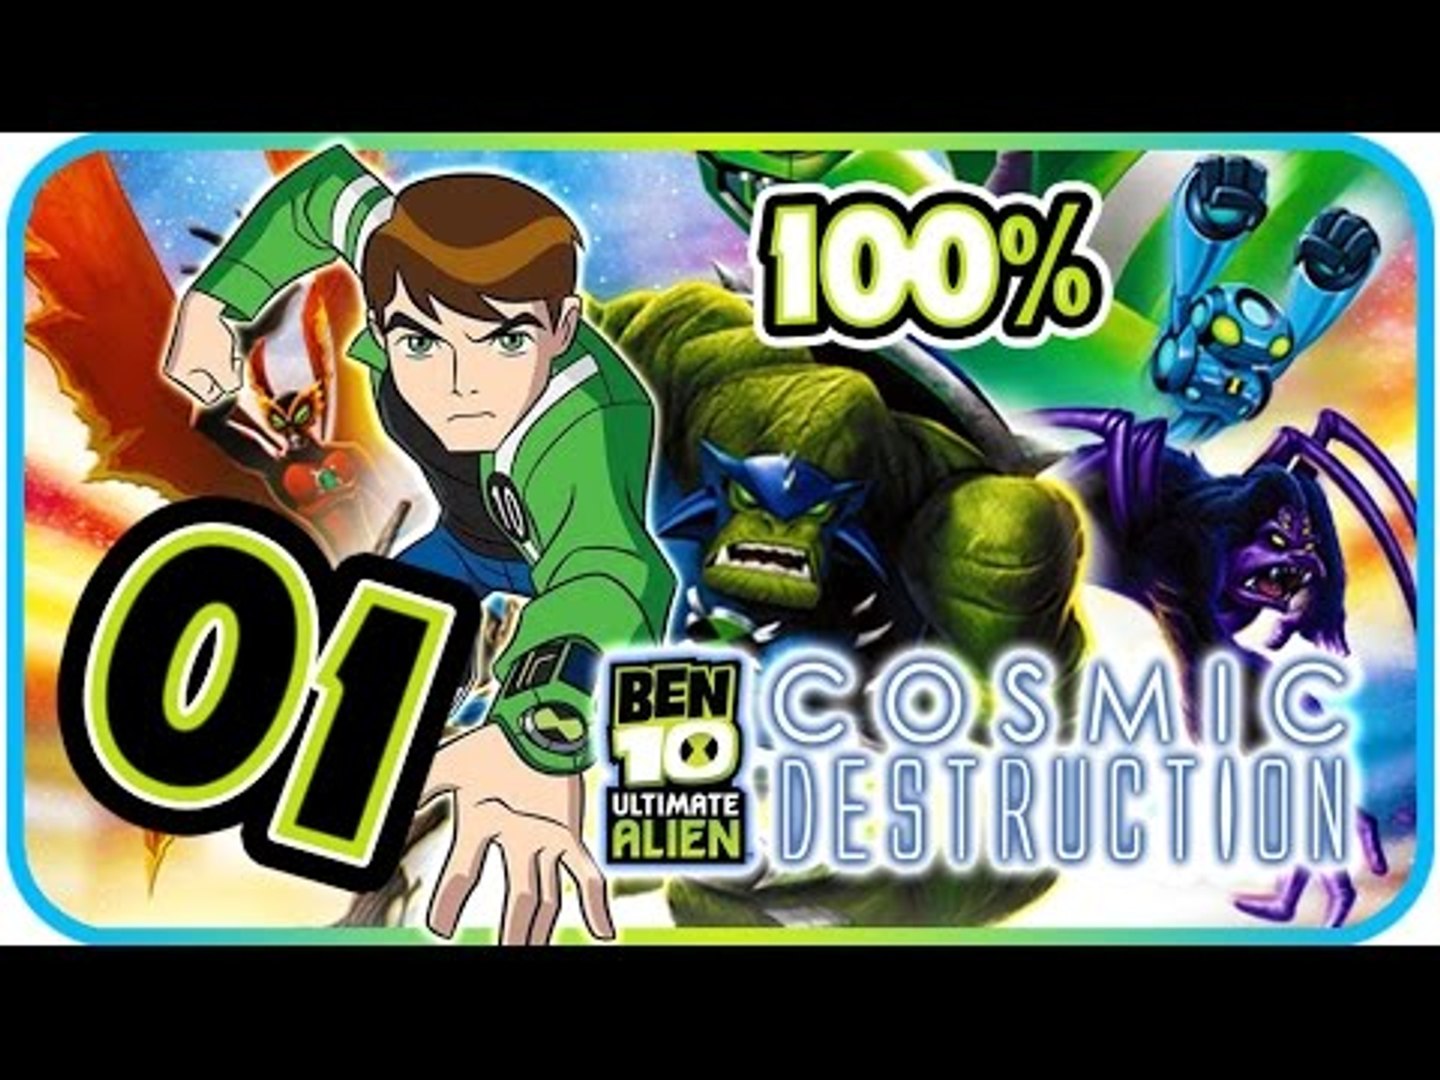 Ben 10 Ultimate Alien: Cosmic Destruction (PS3) by WishingTikal -  Dailymotion